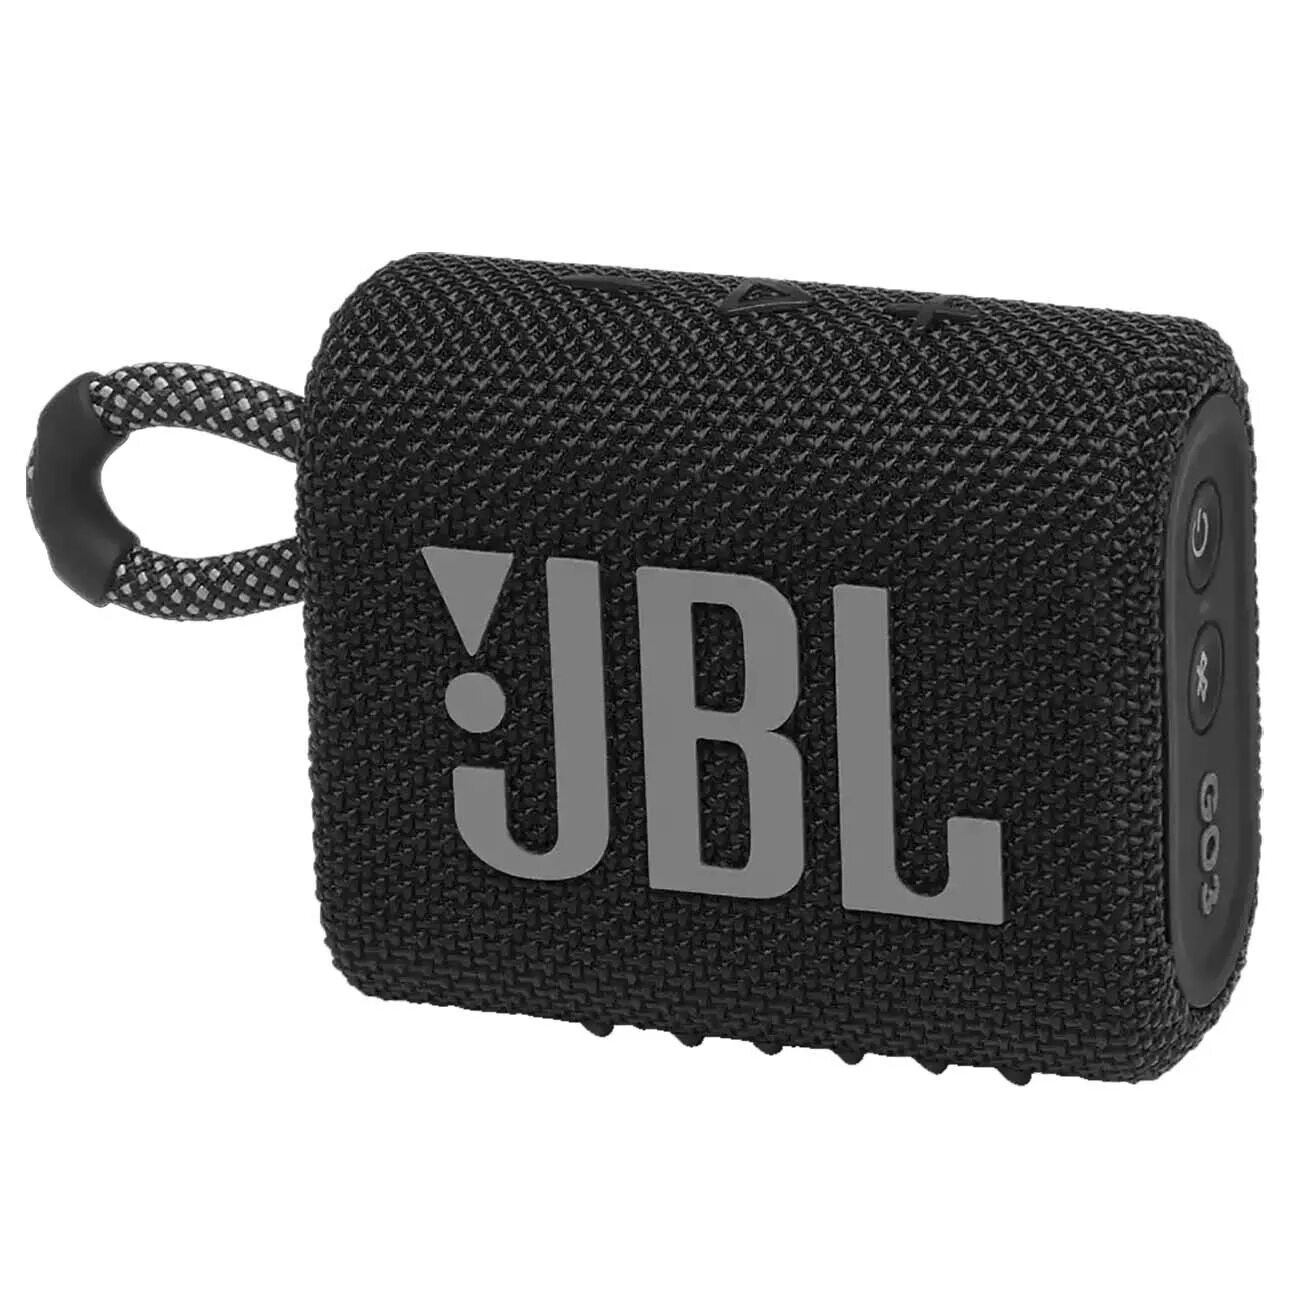 Jbl go 3 купить. Колонка JBL go 1. Беспроводная колонка JBL go 3. Портативная акустическая система JBL go 3 чёрный. Беспроводная акустика JBL go 3 Red.